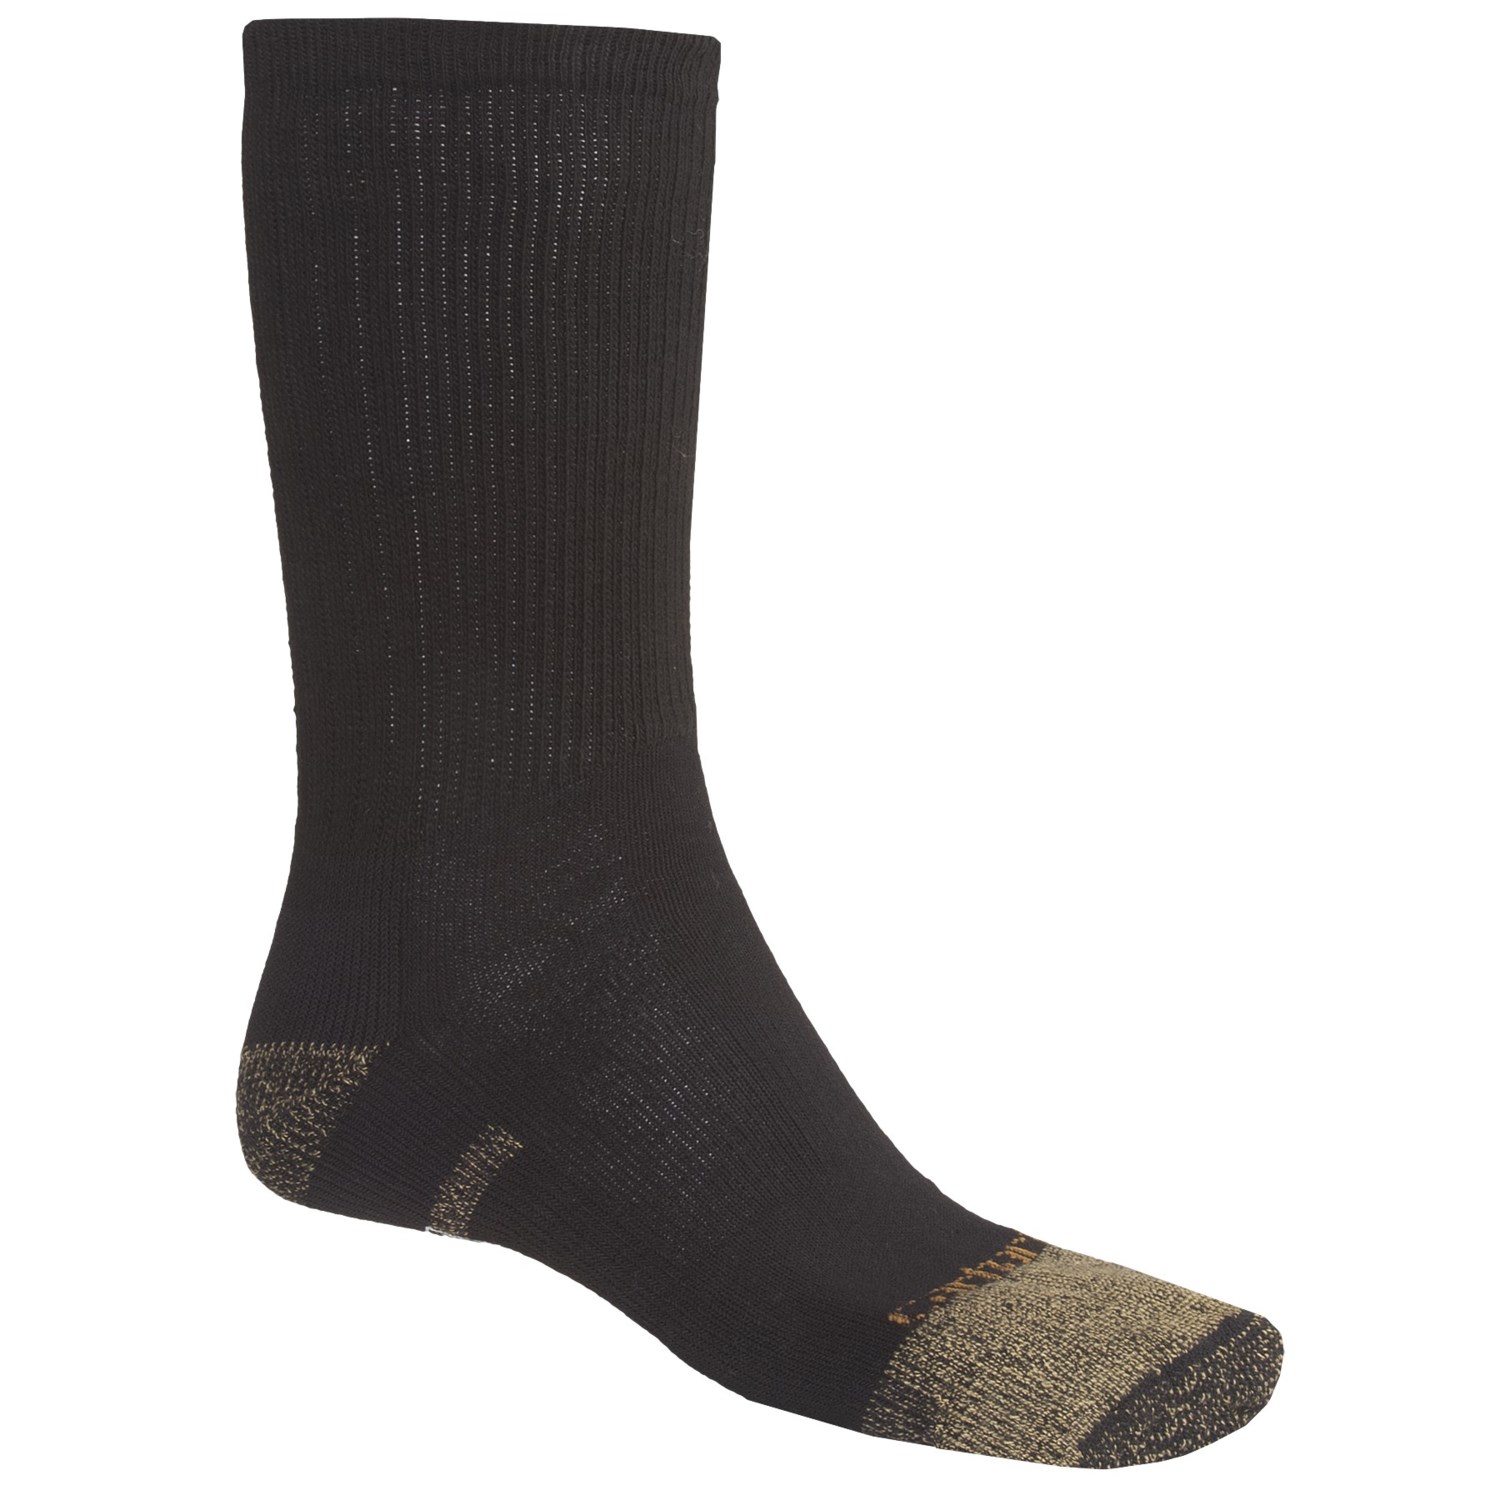 Carhartt Traditional AllSeason Cotton Socks For Men